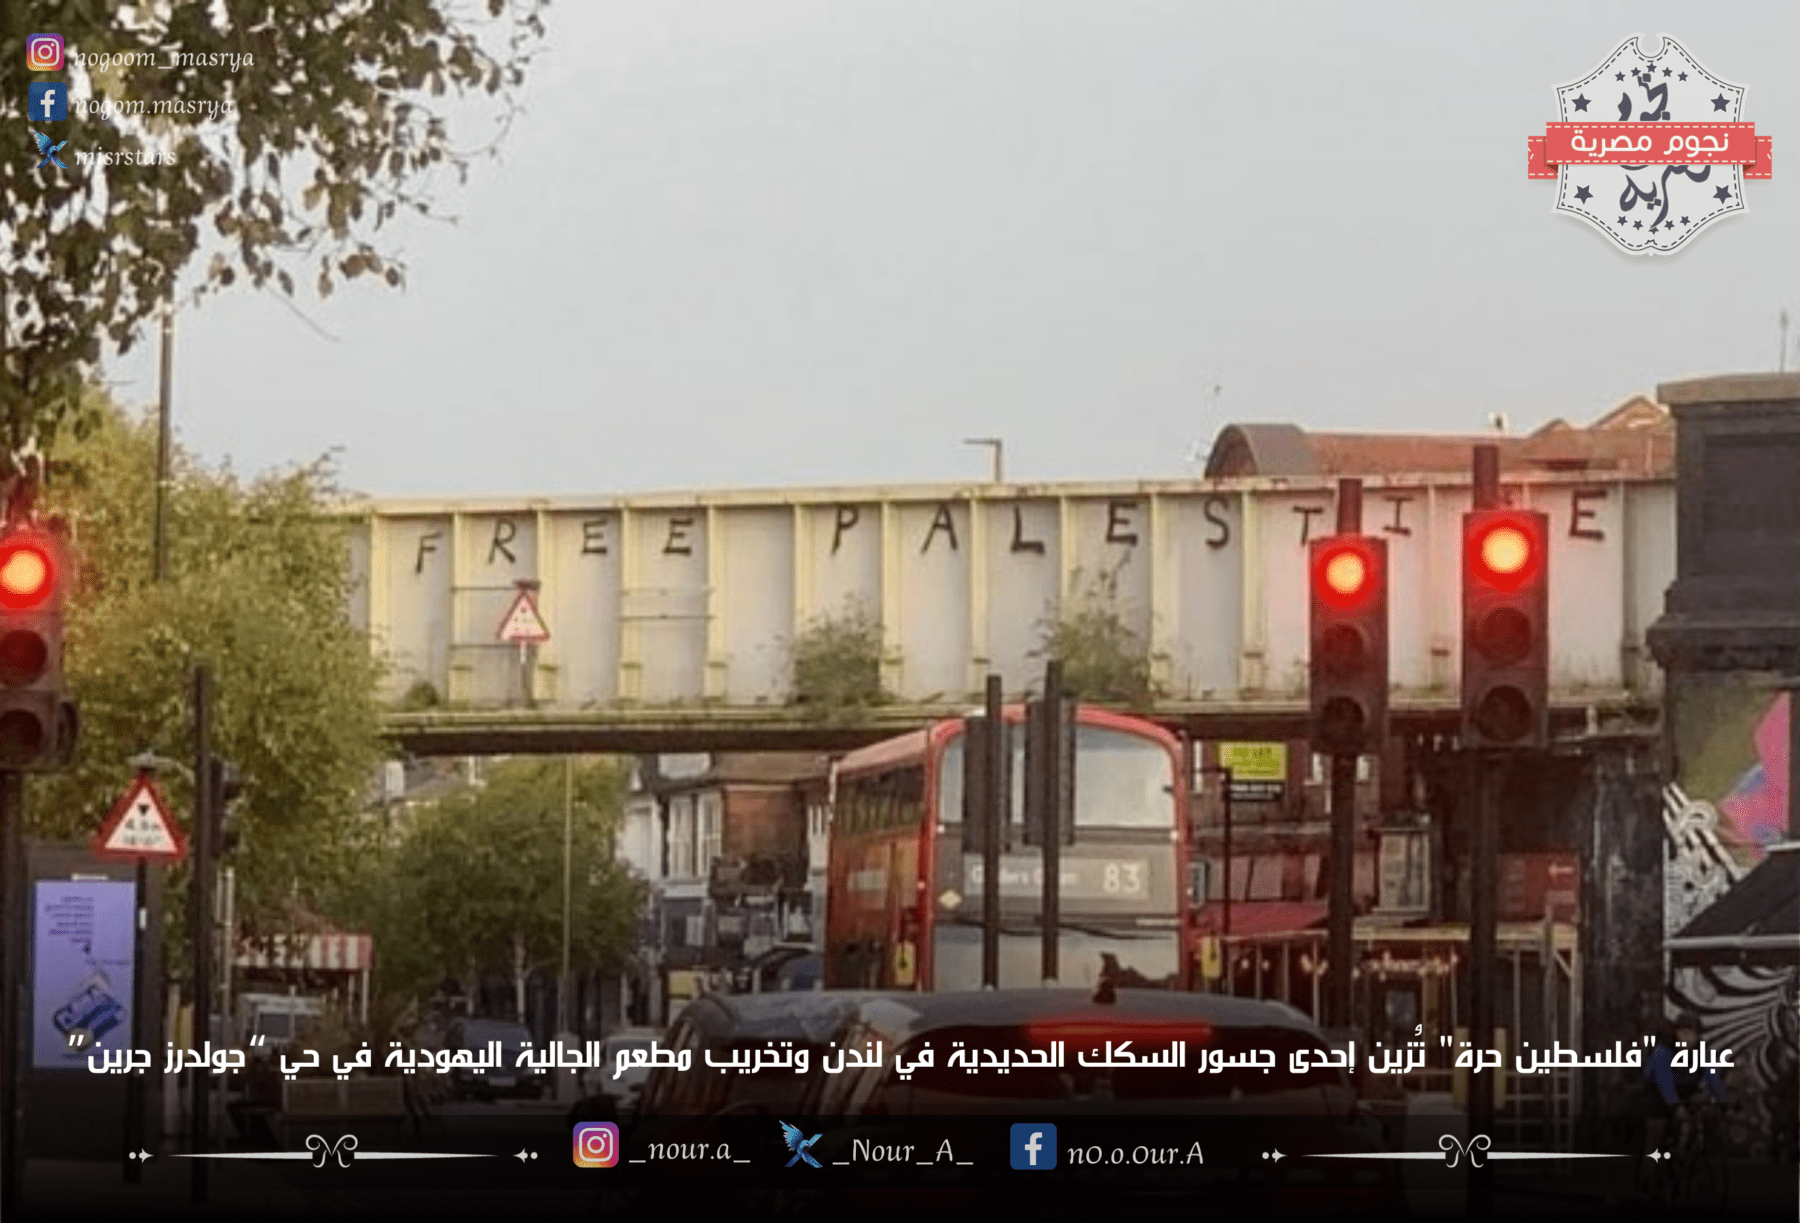 عبارة فلسطين حرة تم كتابتها على إحدى جسور السكك الحديدية بلندن - مصدر الصورة: تويتر